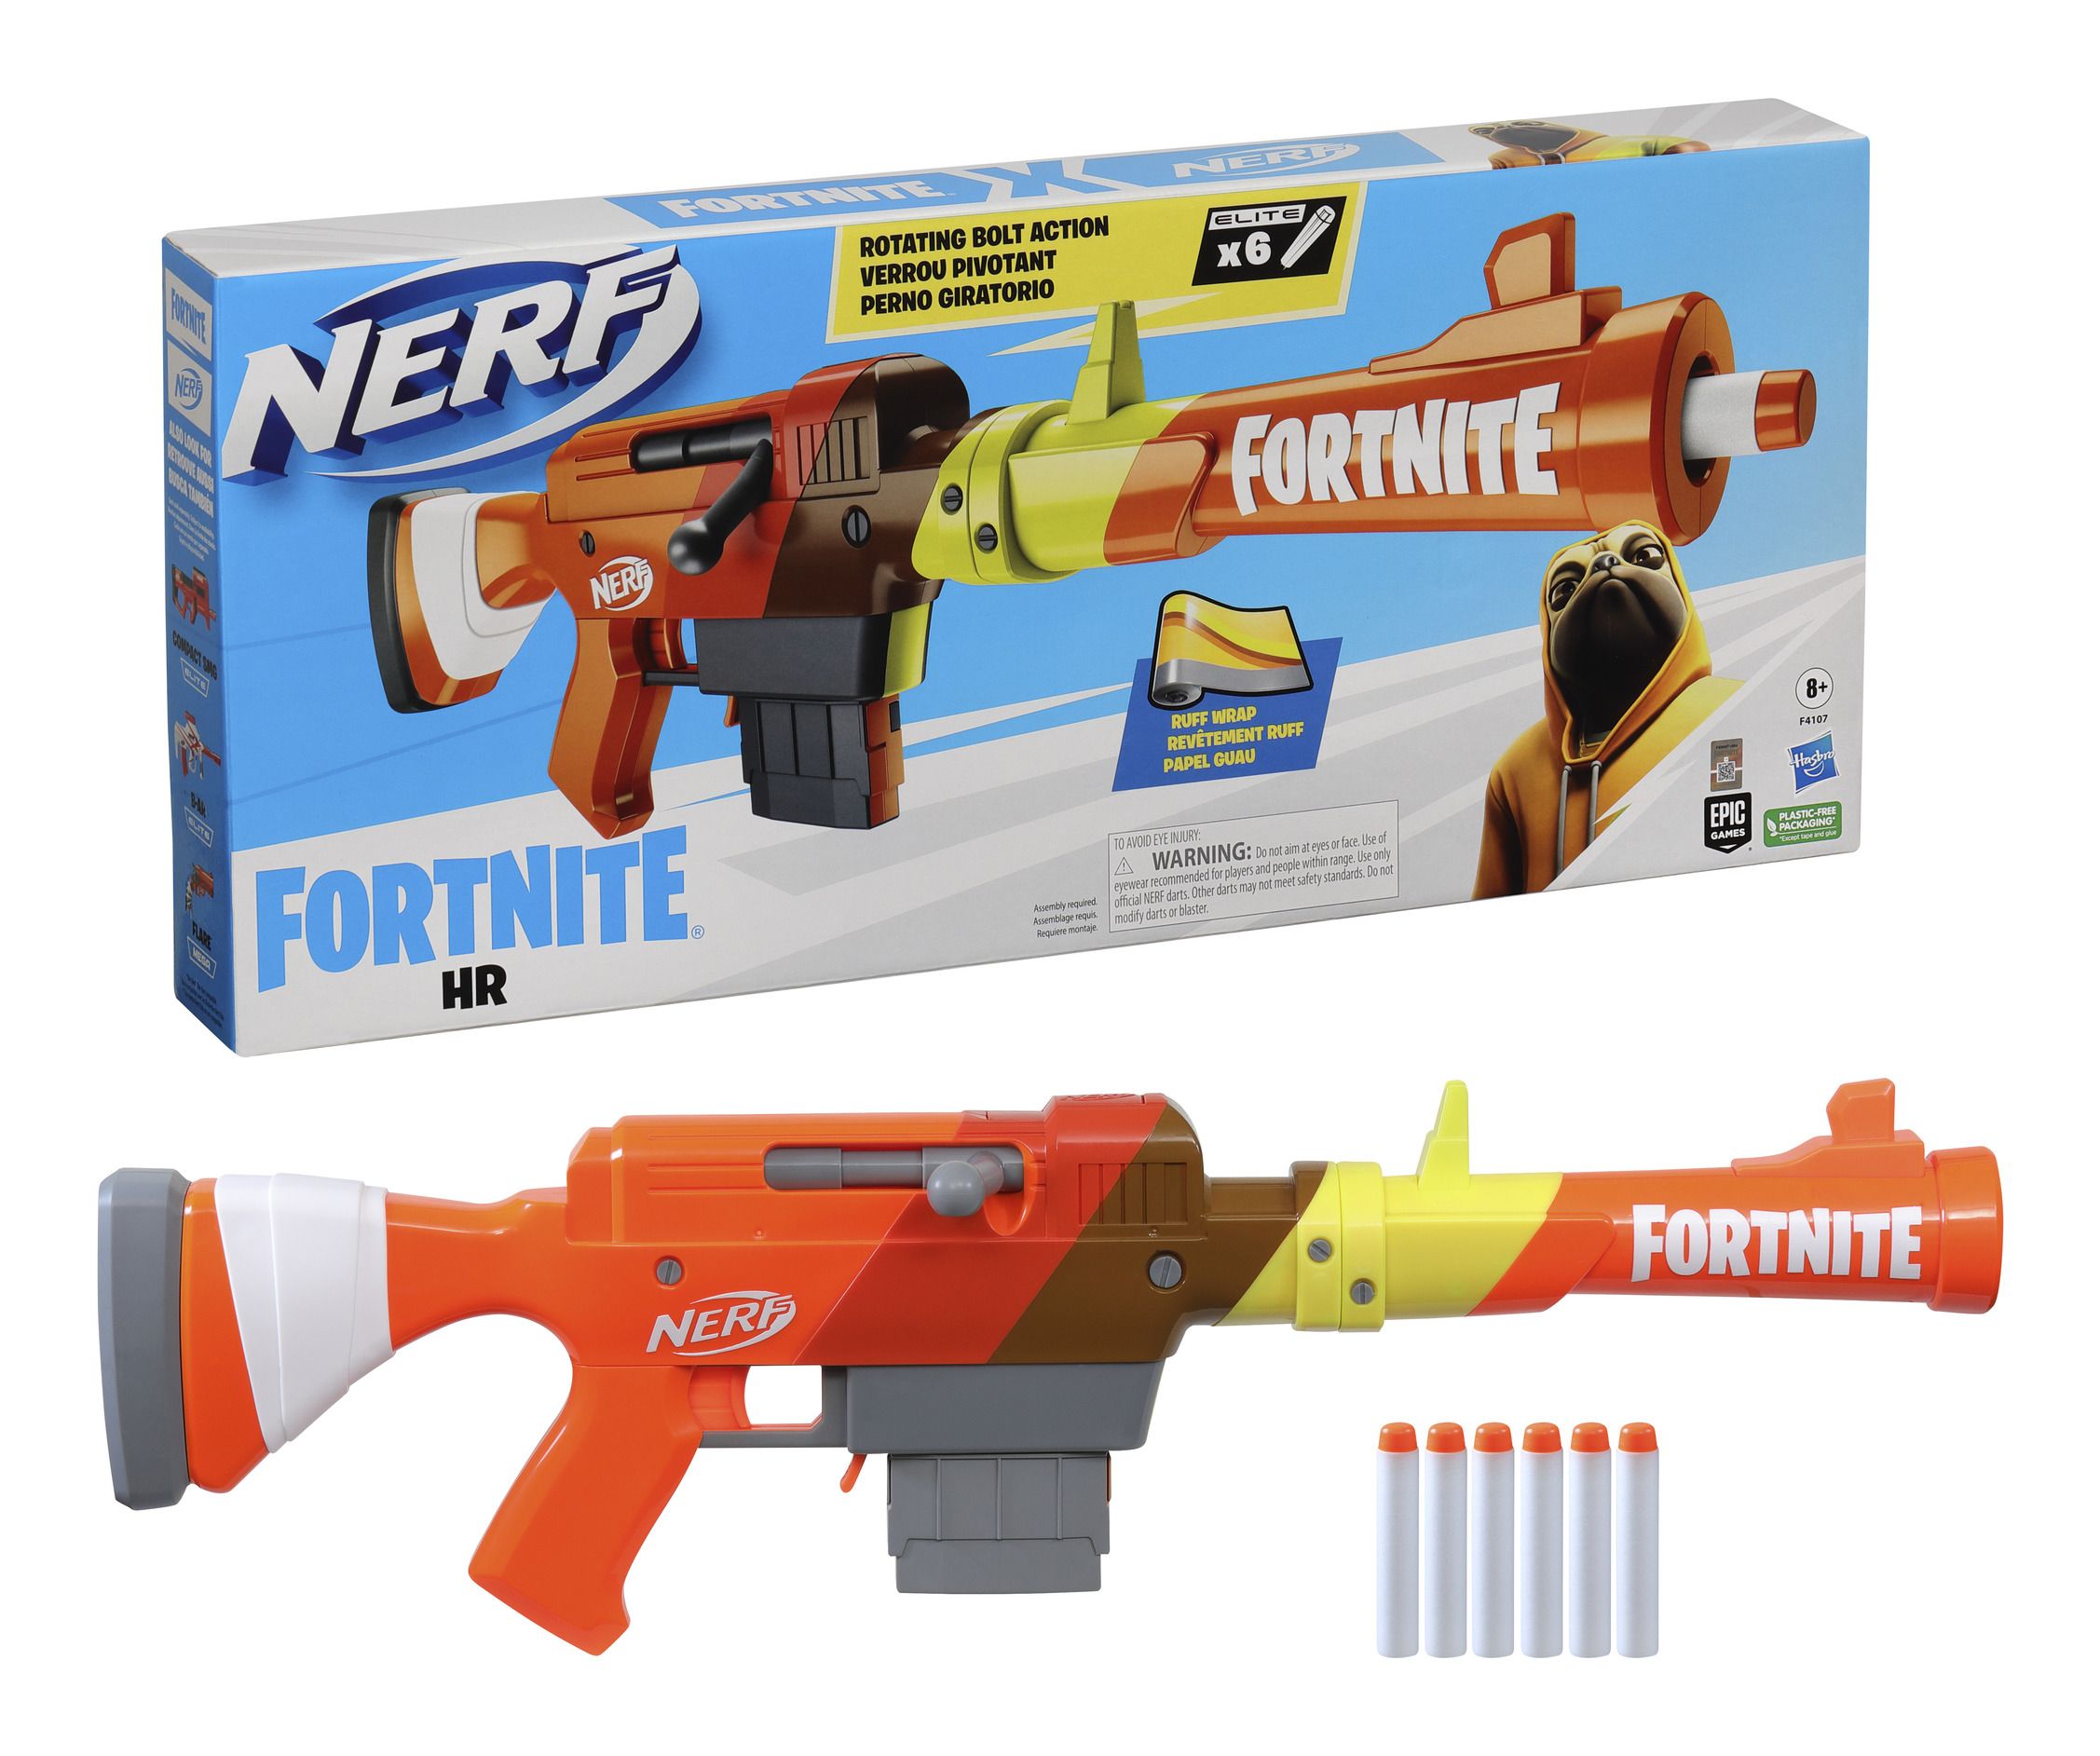 Nerf Fortnite HR Blaster | Toys Toys Toys UK